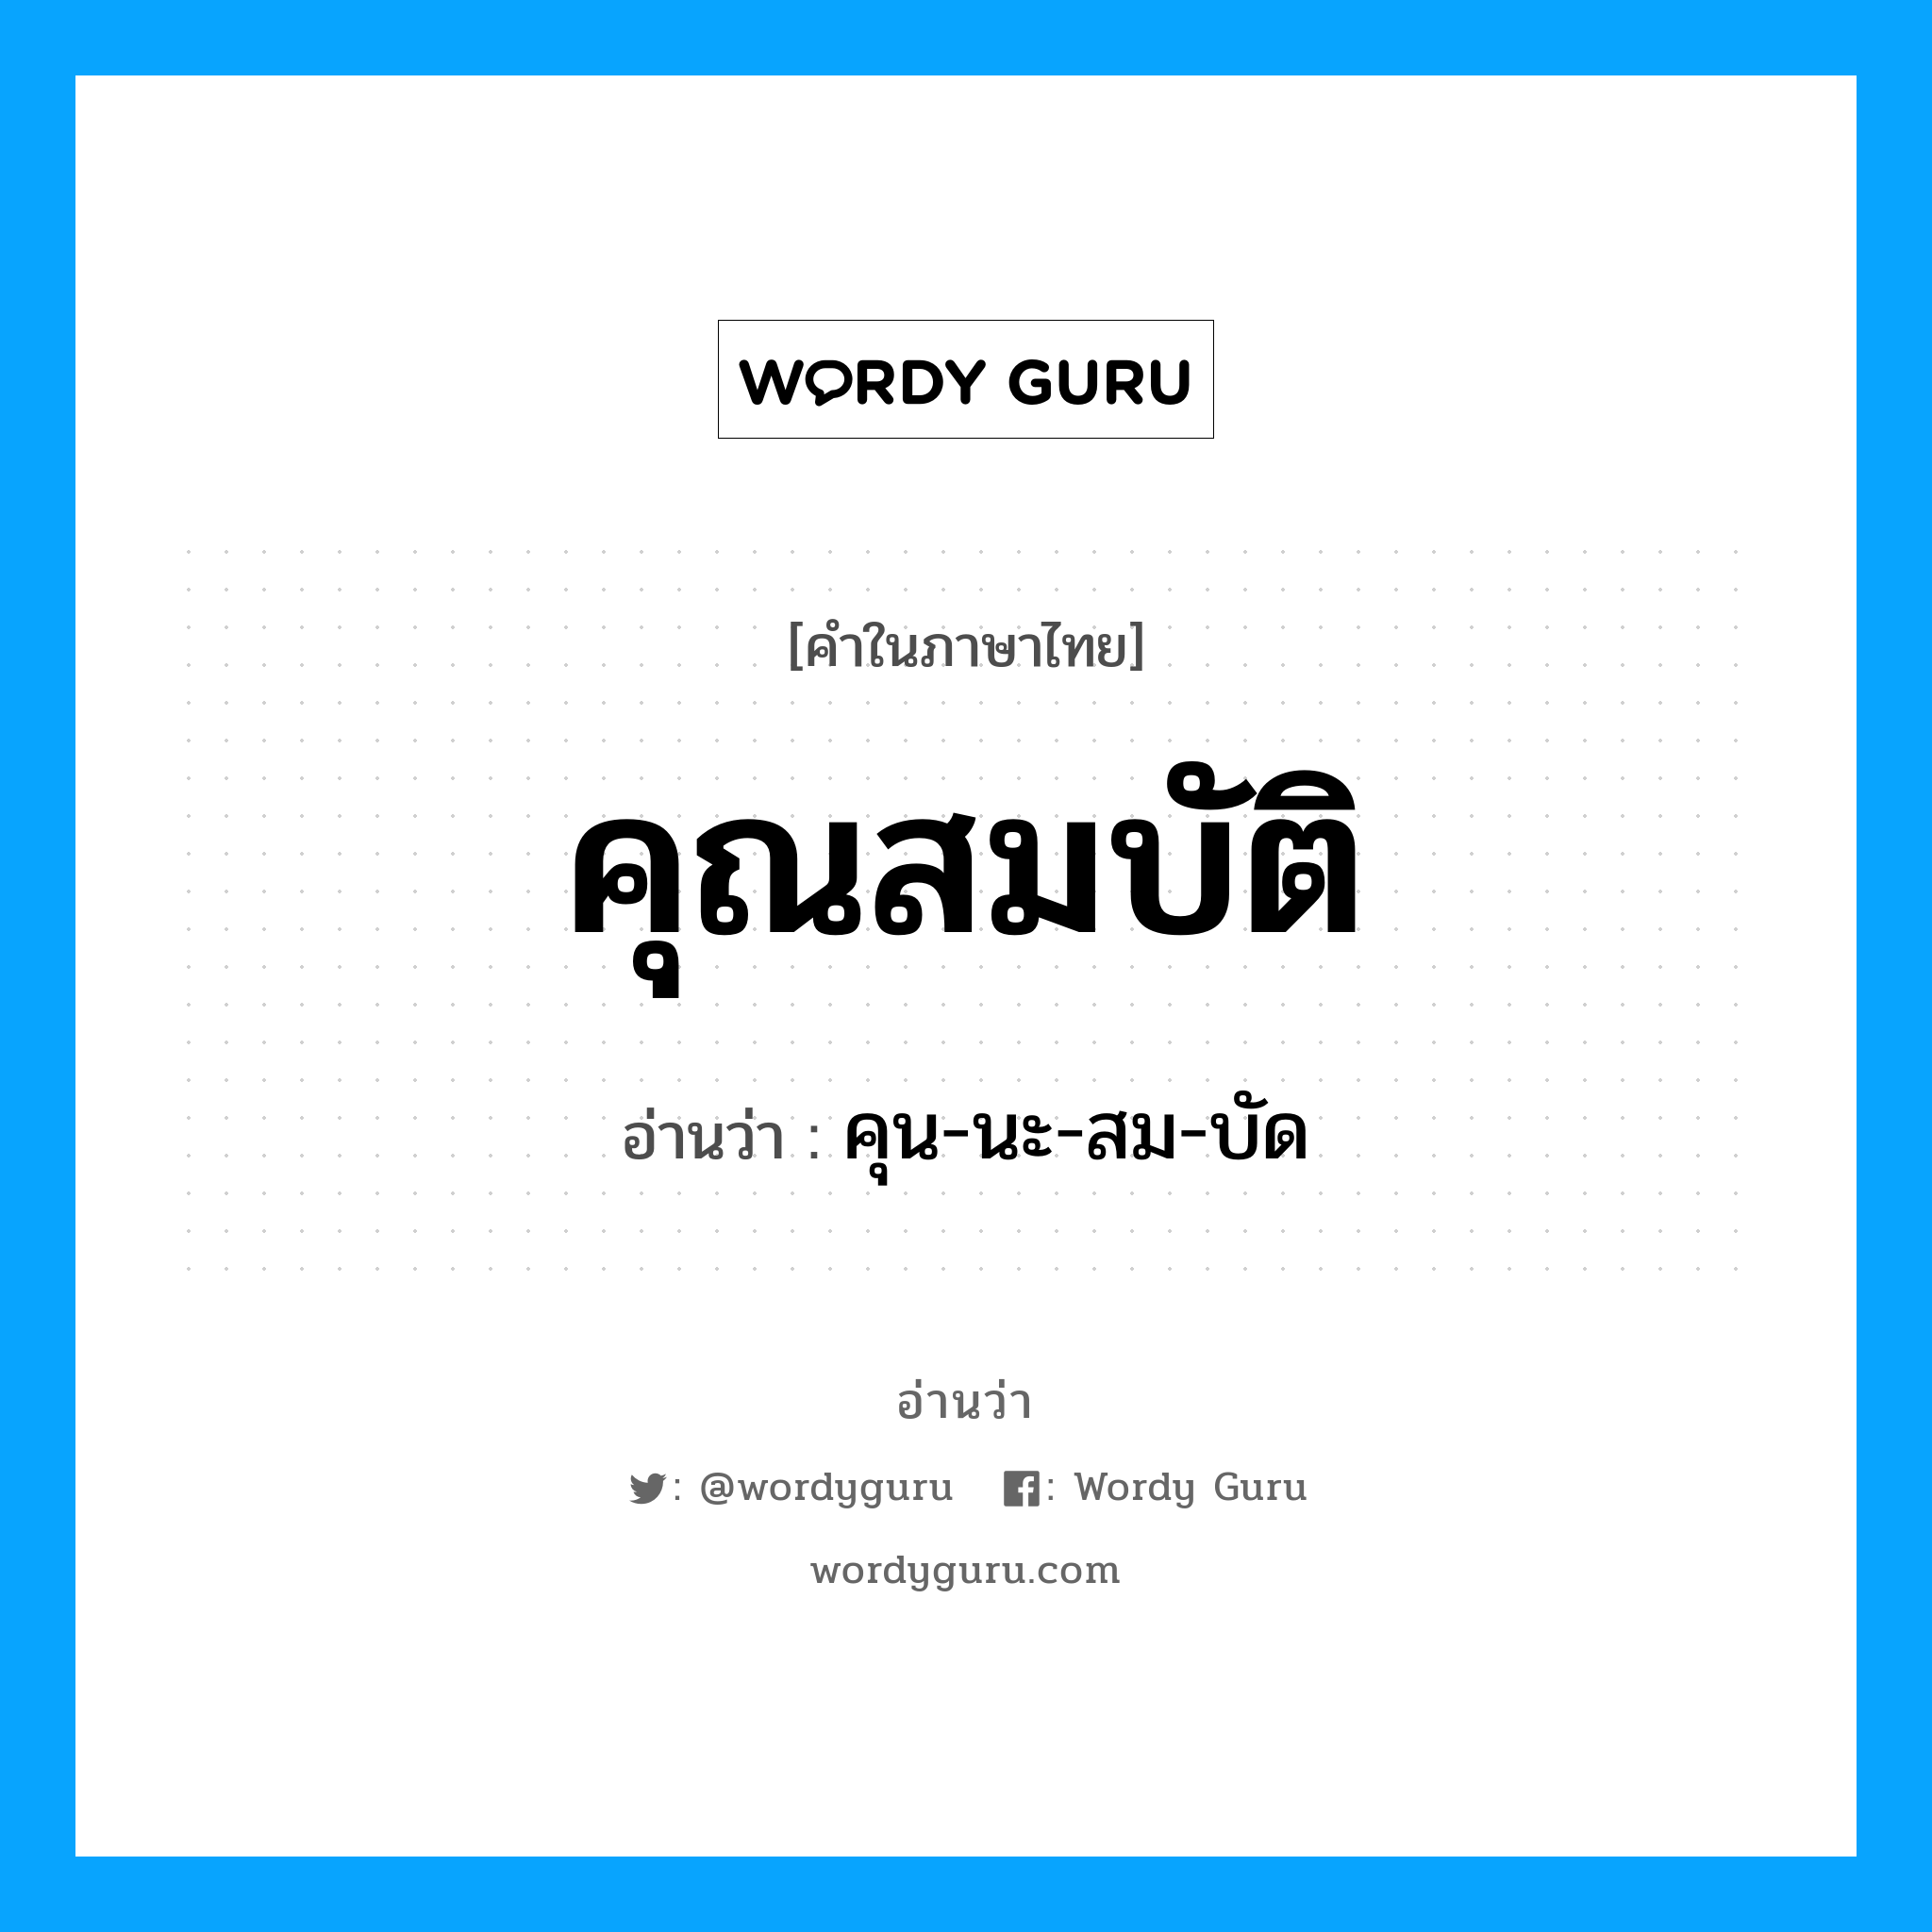 คุน-นะ-สม-บัด เป็นคำอ่านของคำไหน?, คำในภาษาไทย คุน-นะ-สม-บัด อ่านว่า คุณสมบัติ